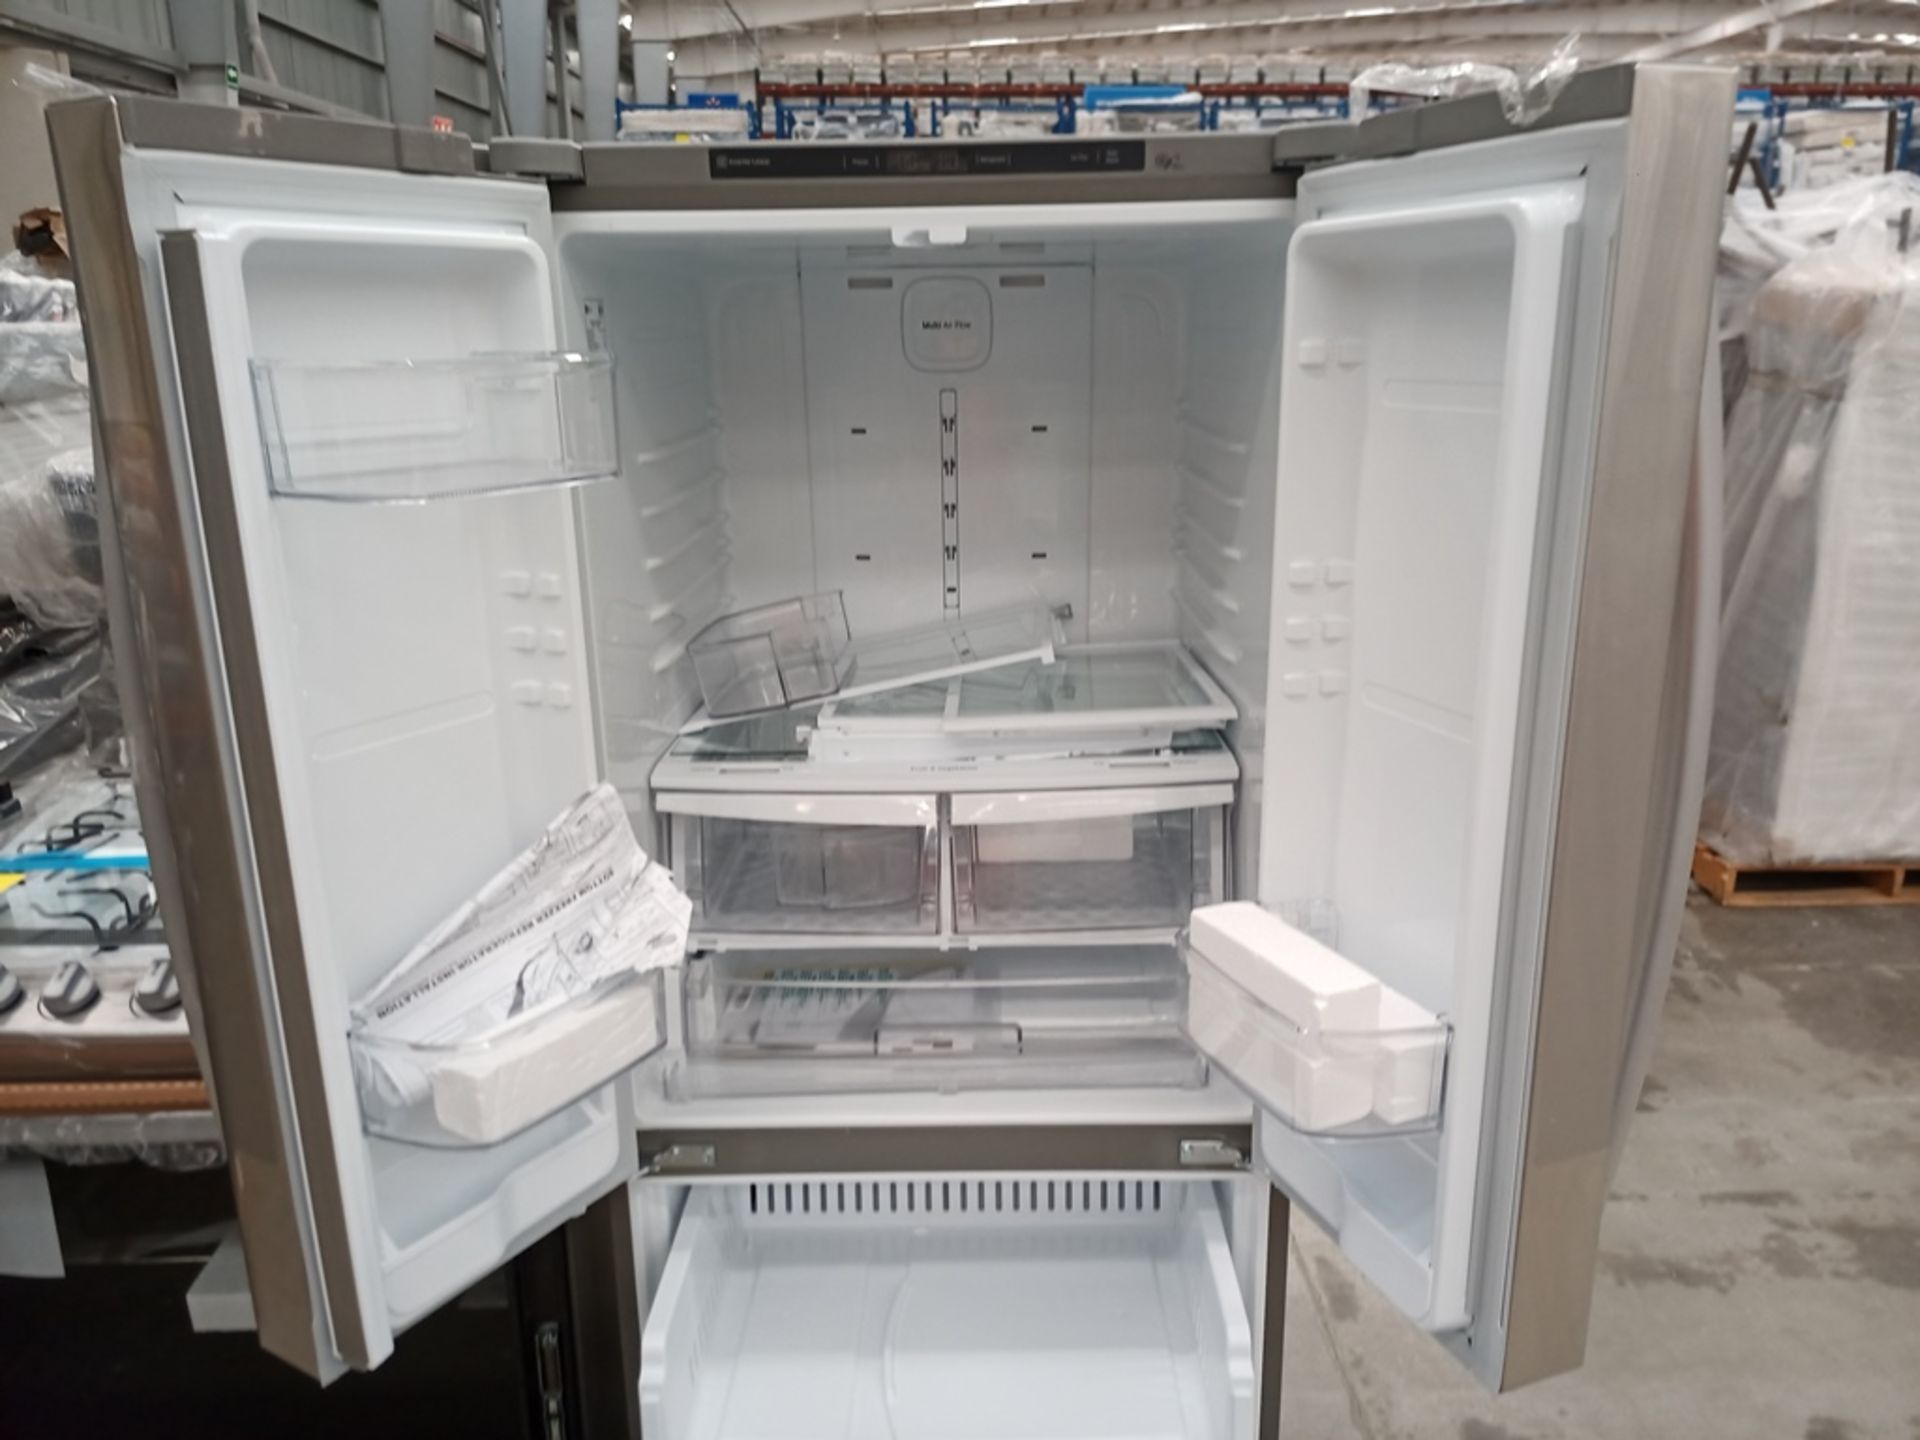 1 Refrigerador con dispensador de agua, Marca LG, Modelo GF22BGSK, Serie 112MRYA05834, Color Gris. - Image 8 of 10